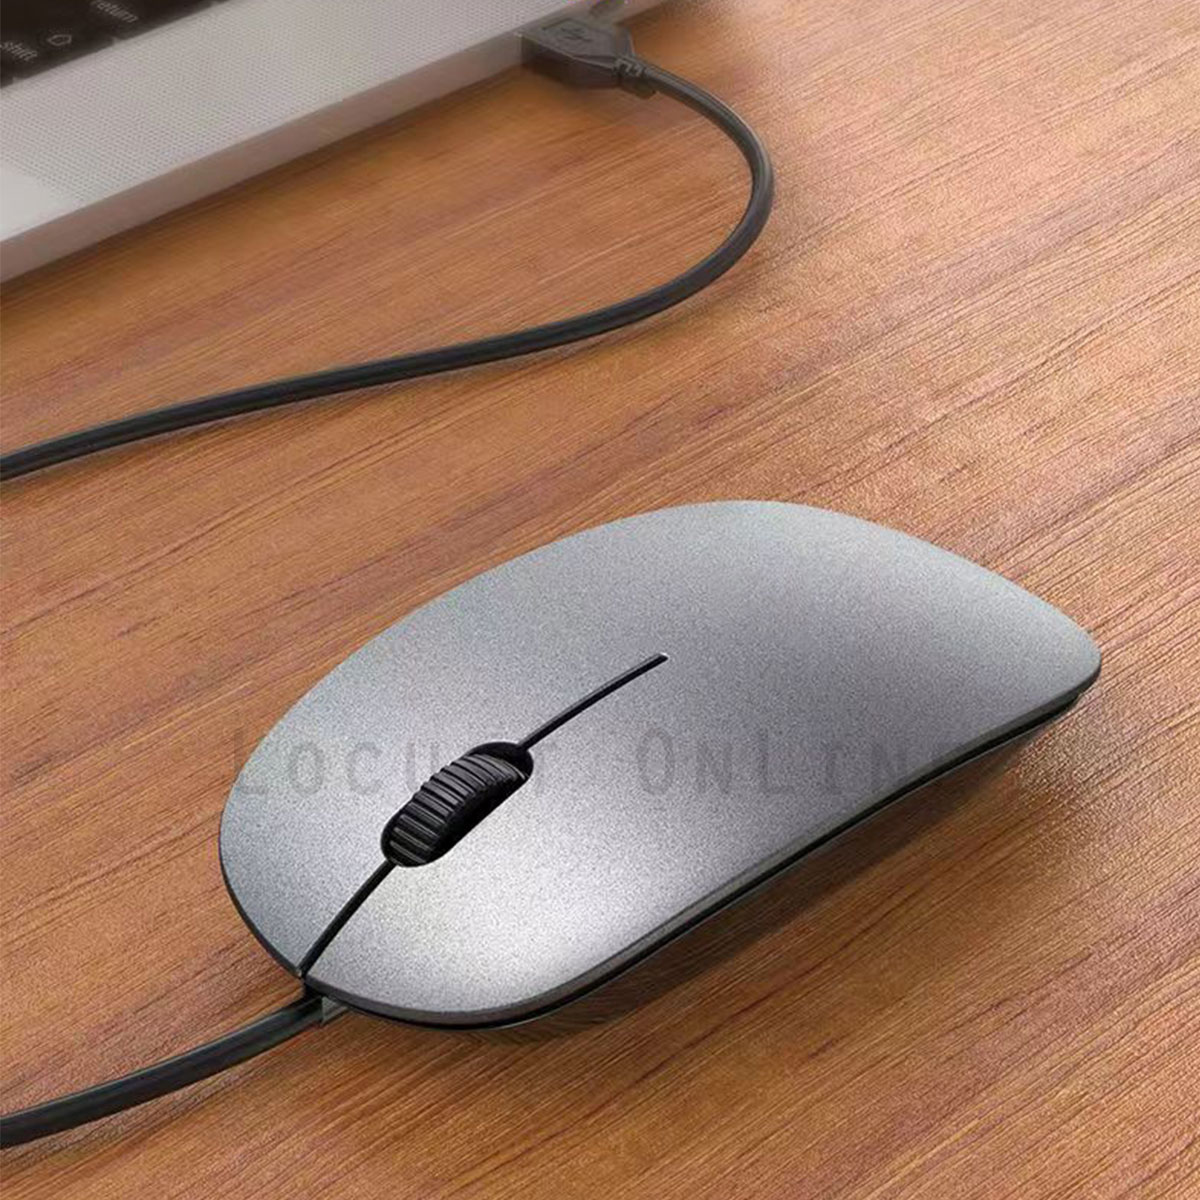 訳あり マウス USB 小型 軽量 薄型 光学式 有線マウス パソコン PC ノートパソコン 1200dpi シルバー